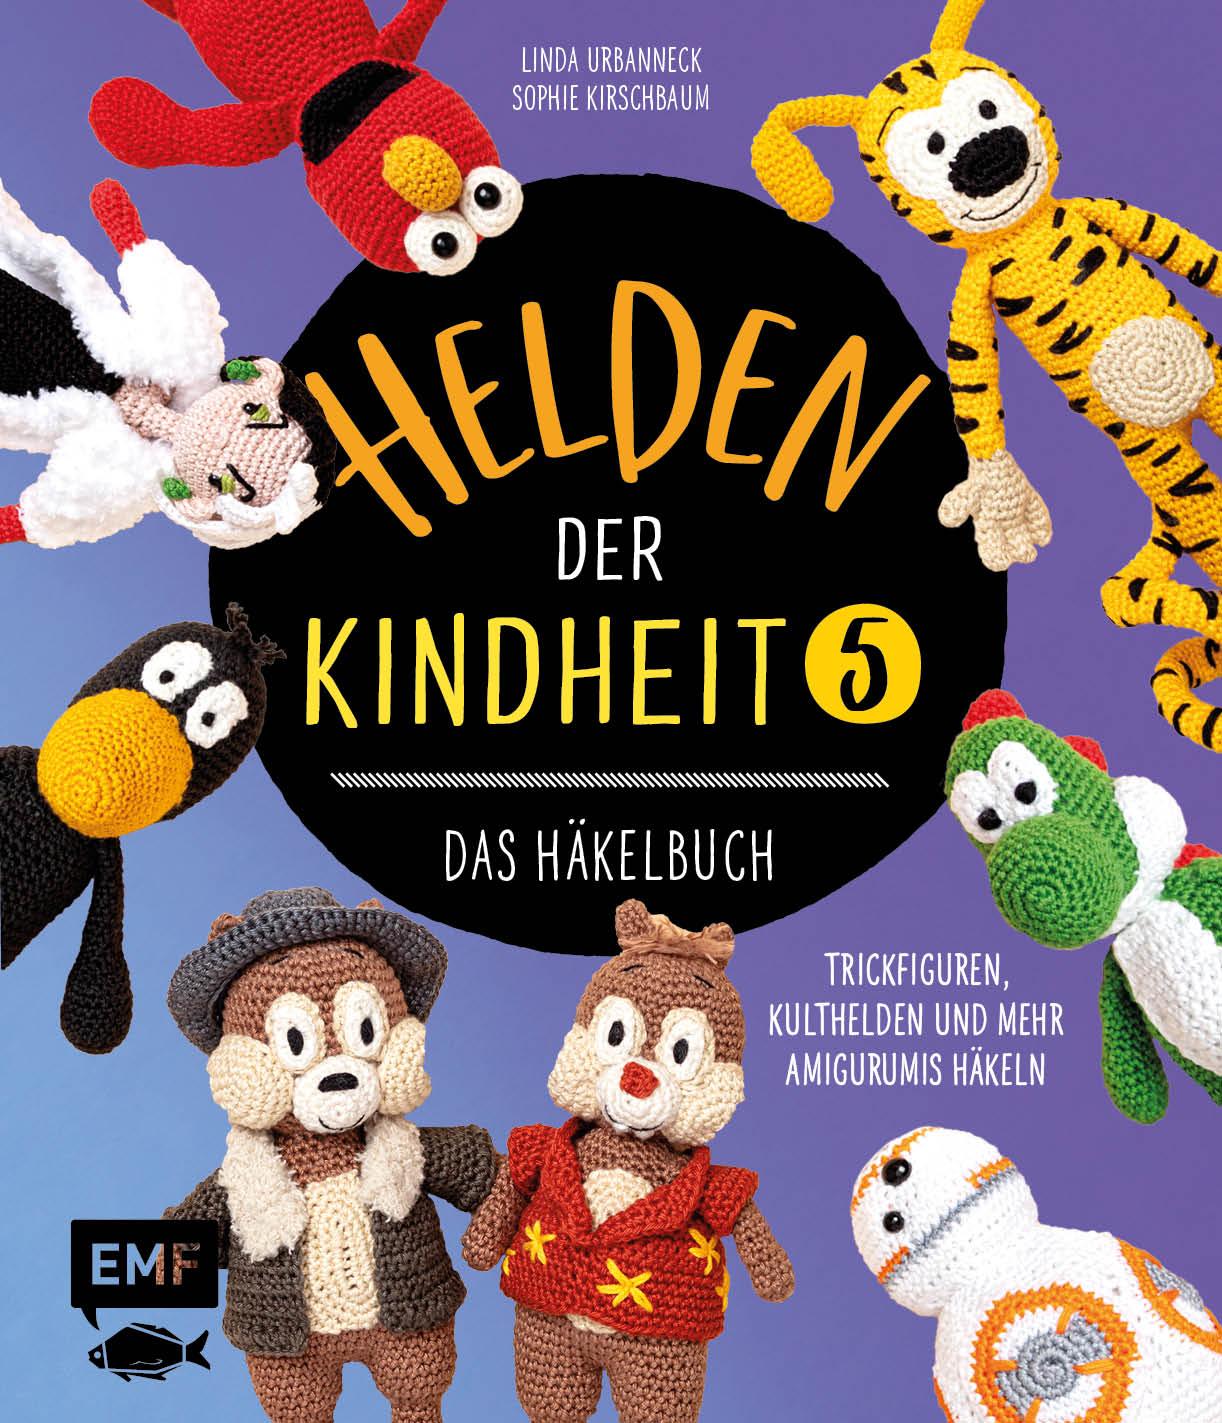 Kniha Helden der Kindheit - Das Häkelbuch - Band 5 Sophie Kirschbaum